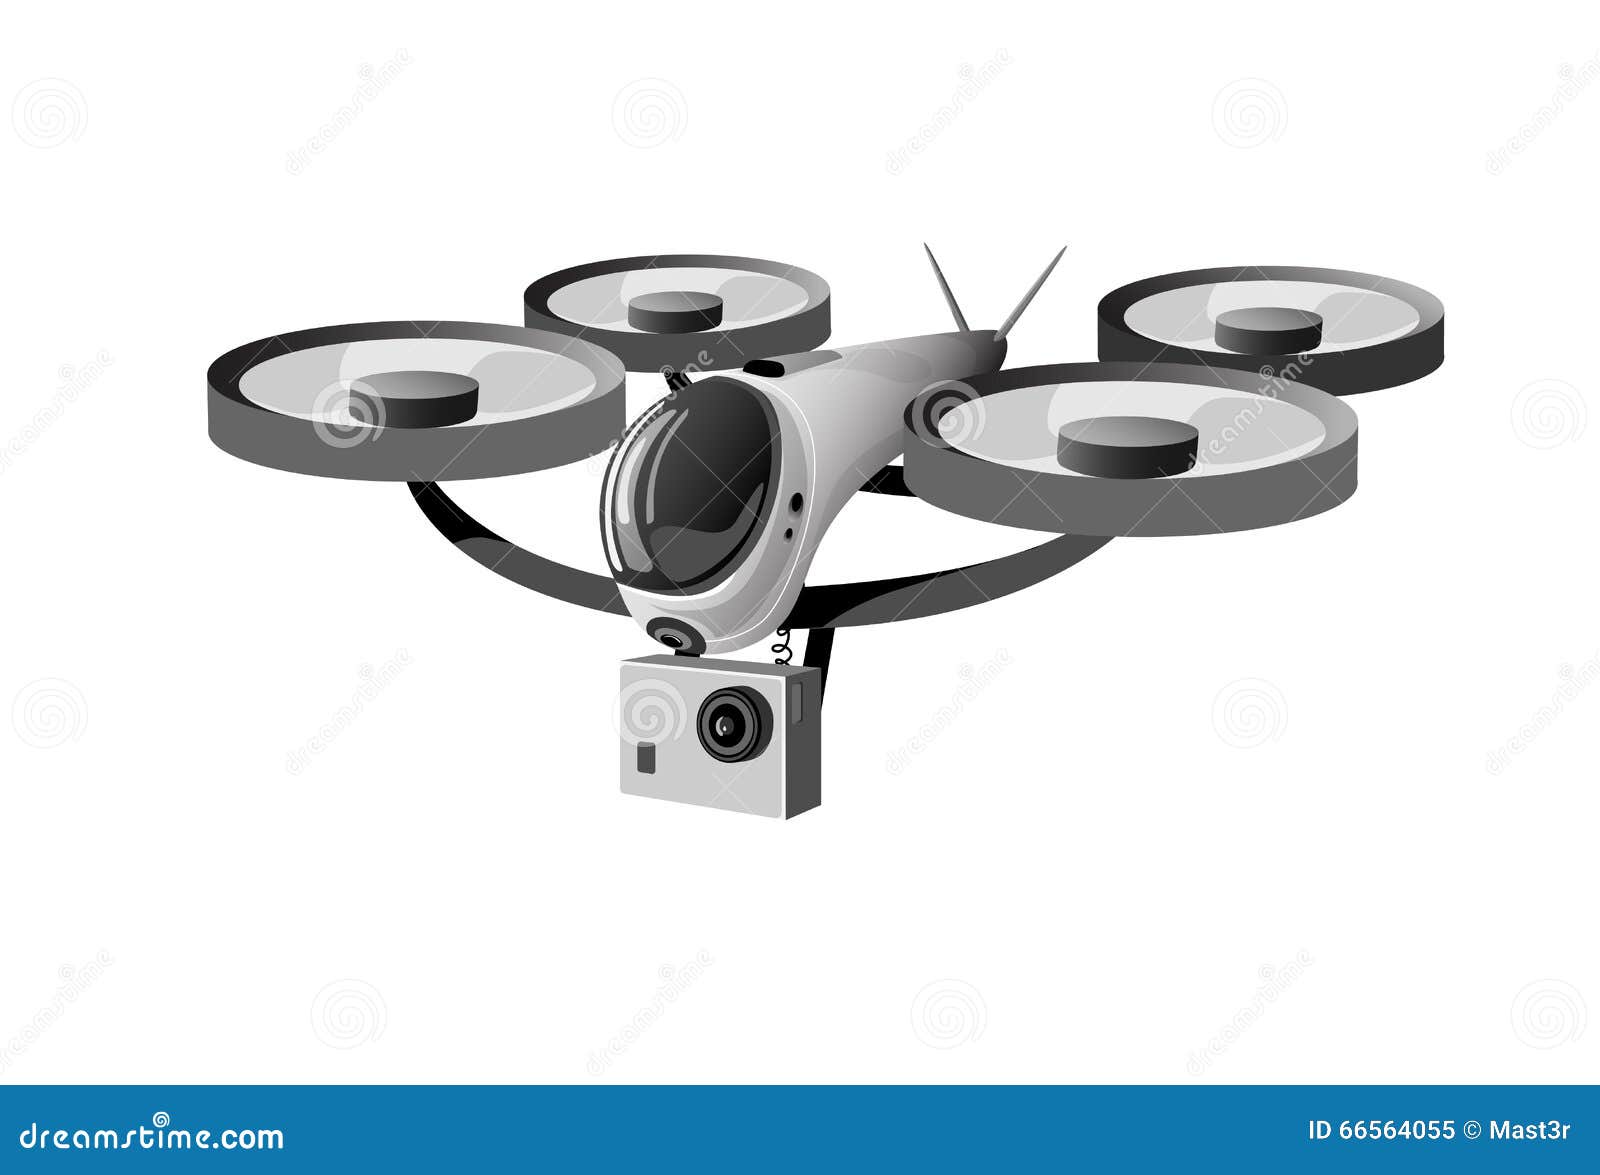 clipart quadrocopter - photo #21